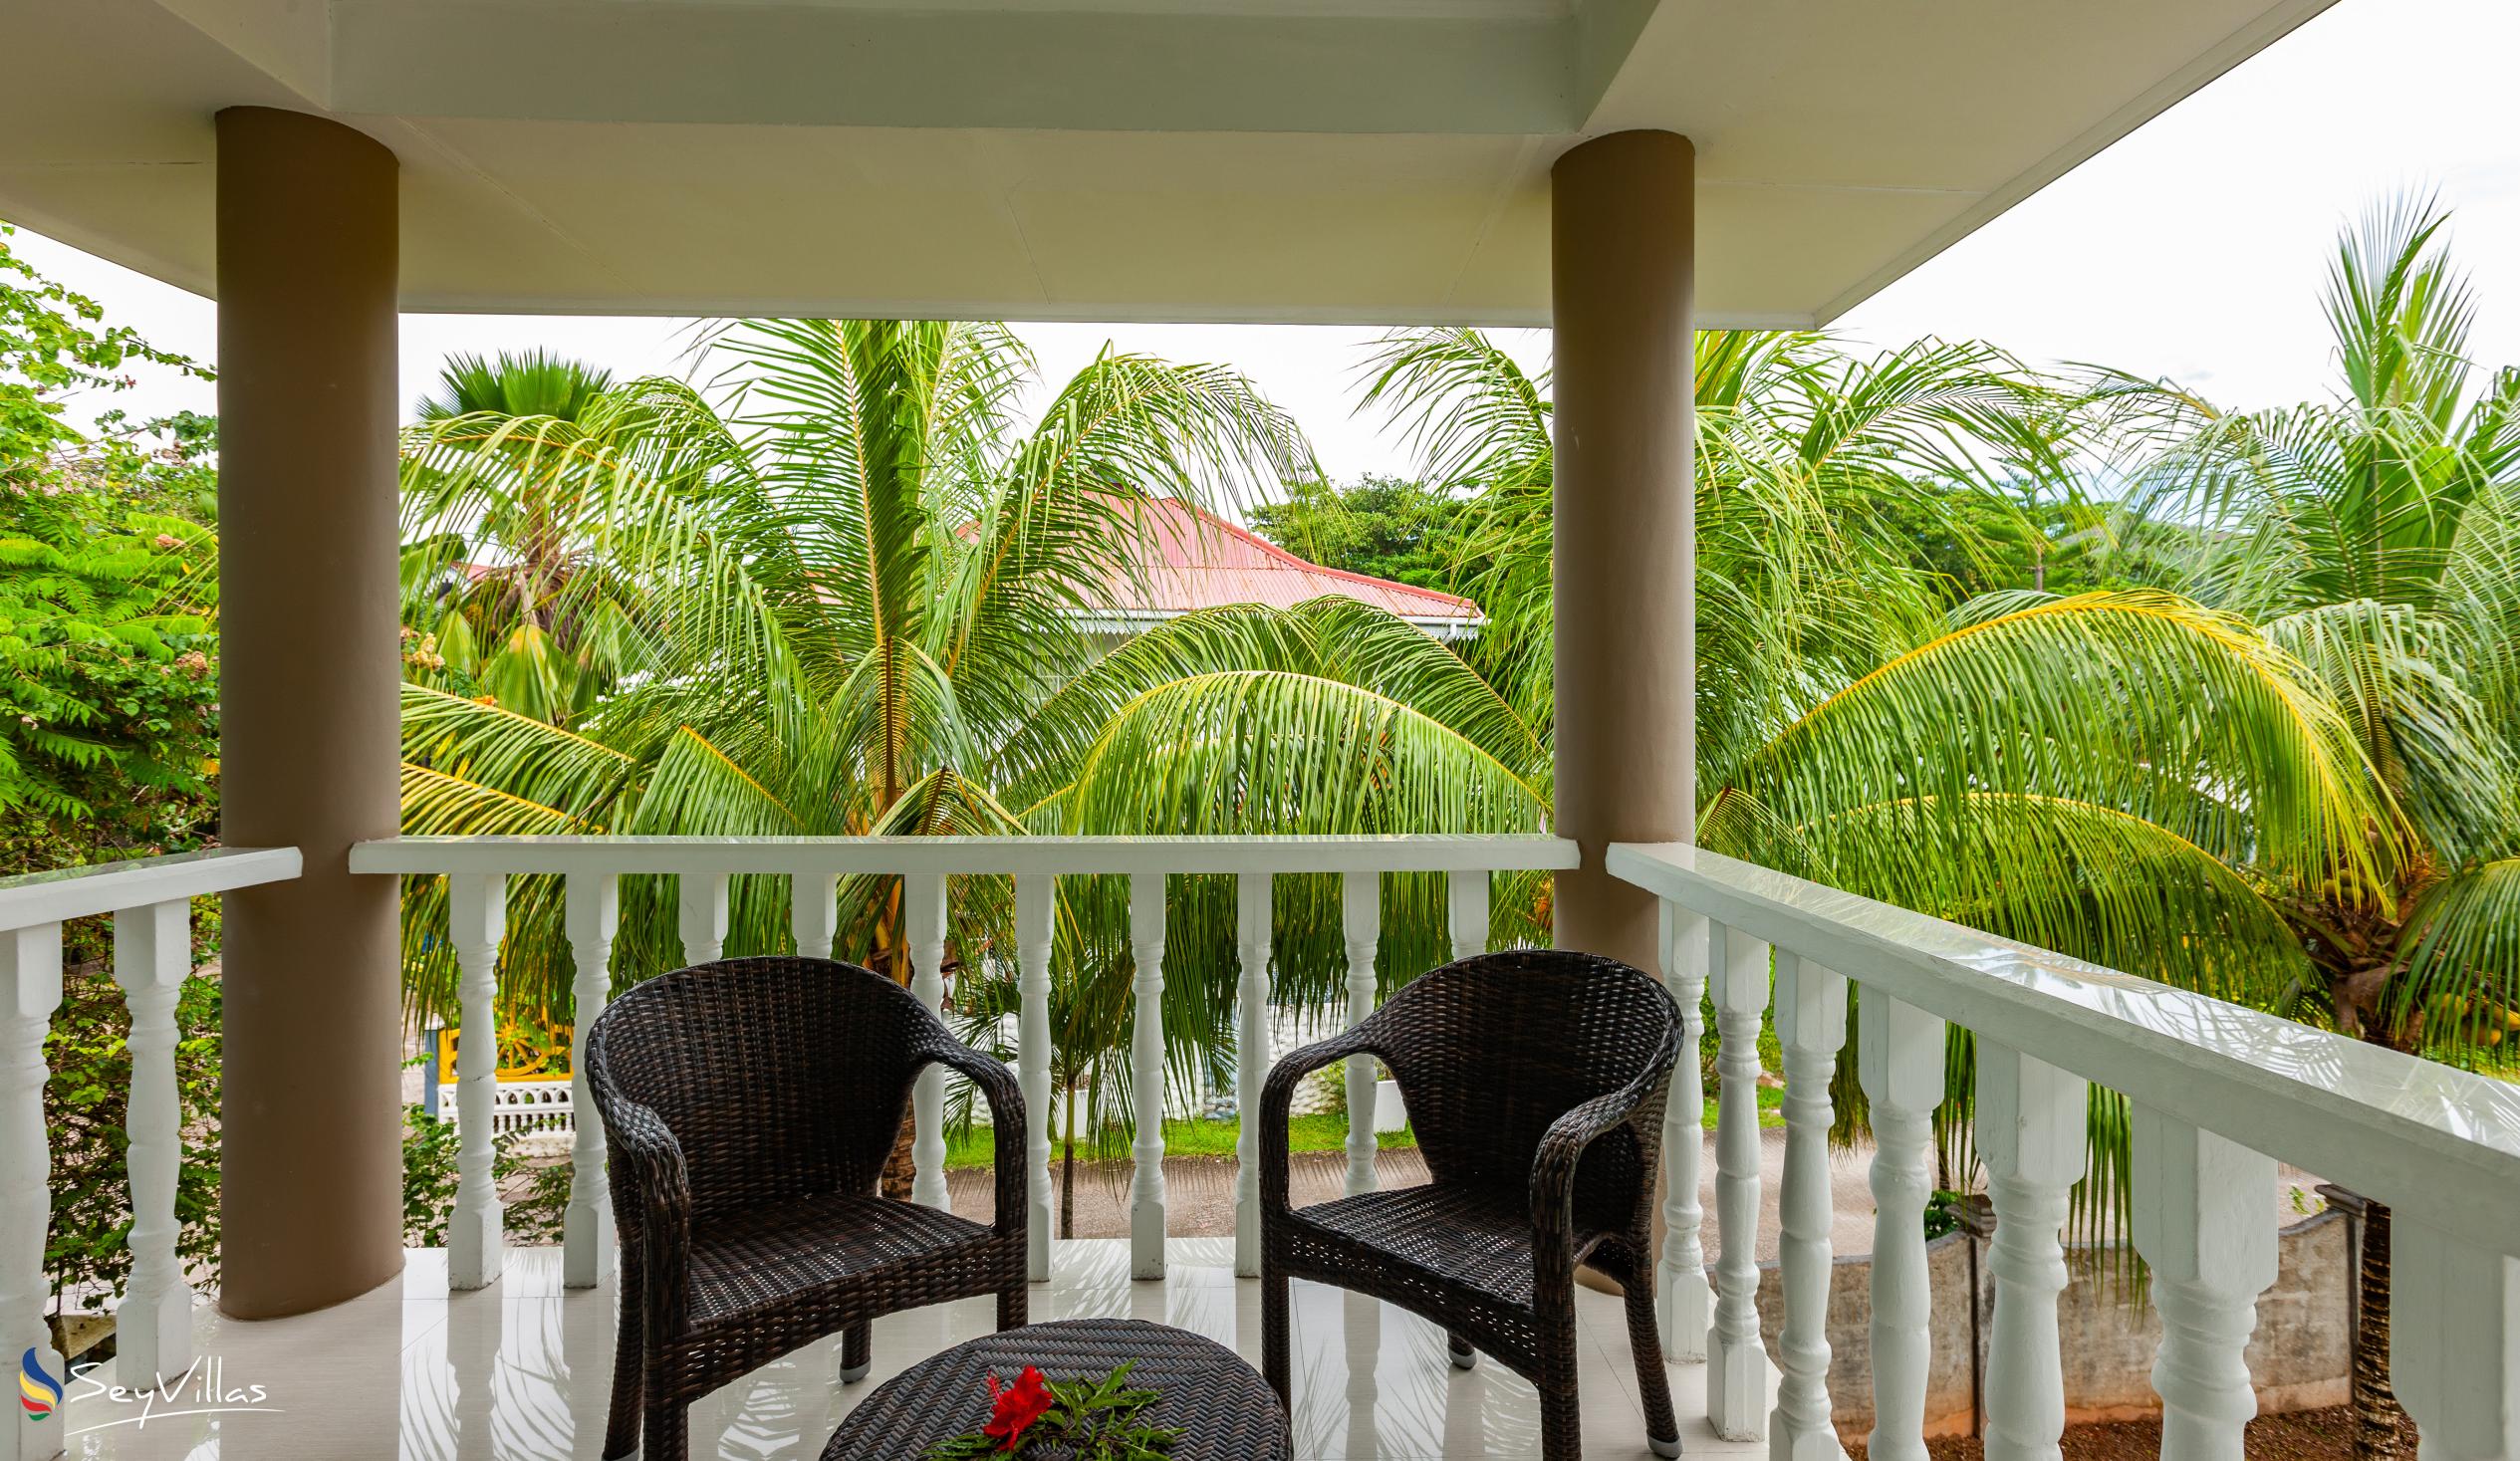 Foto 13: Casa Tara Villas - Appartamento con 2 camere - Praslin (Seychelles)